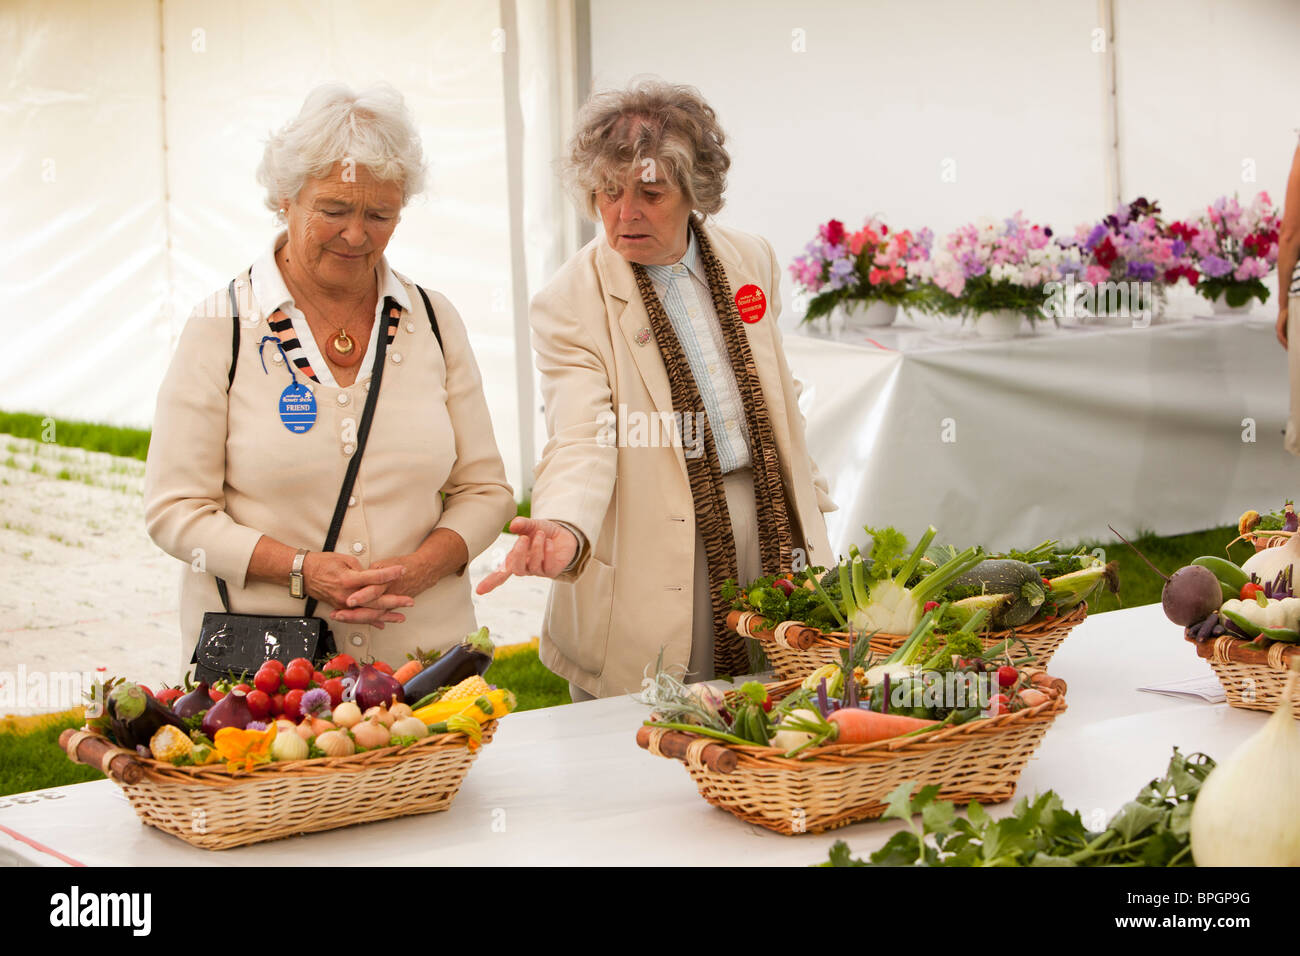 Royaume-uni, Angleterre, Merseyside, Southport Flower Show, exposant en soulignant des paniers de légumes variés à un ami Banque D'Images